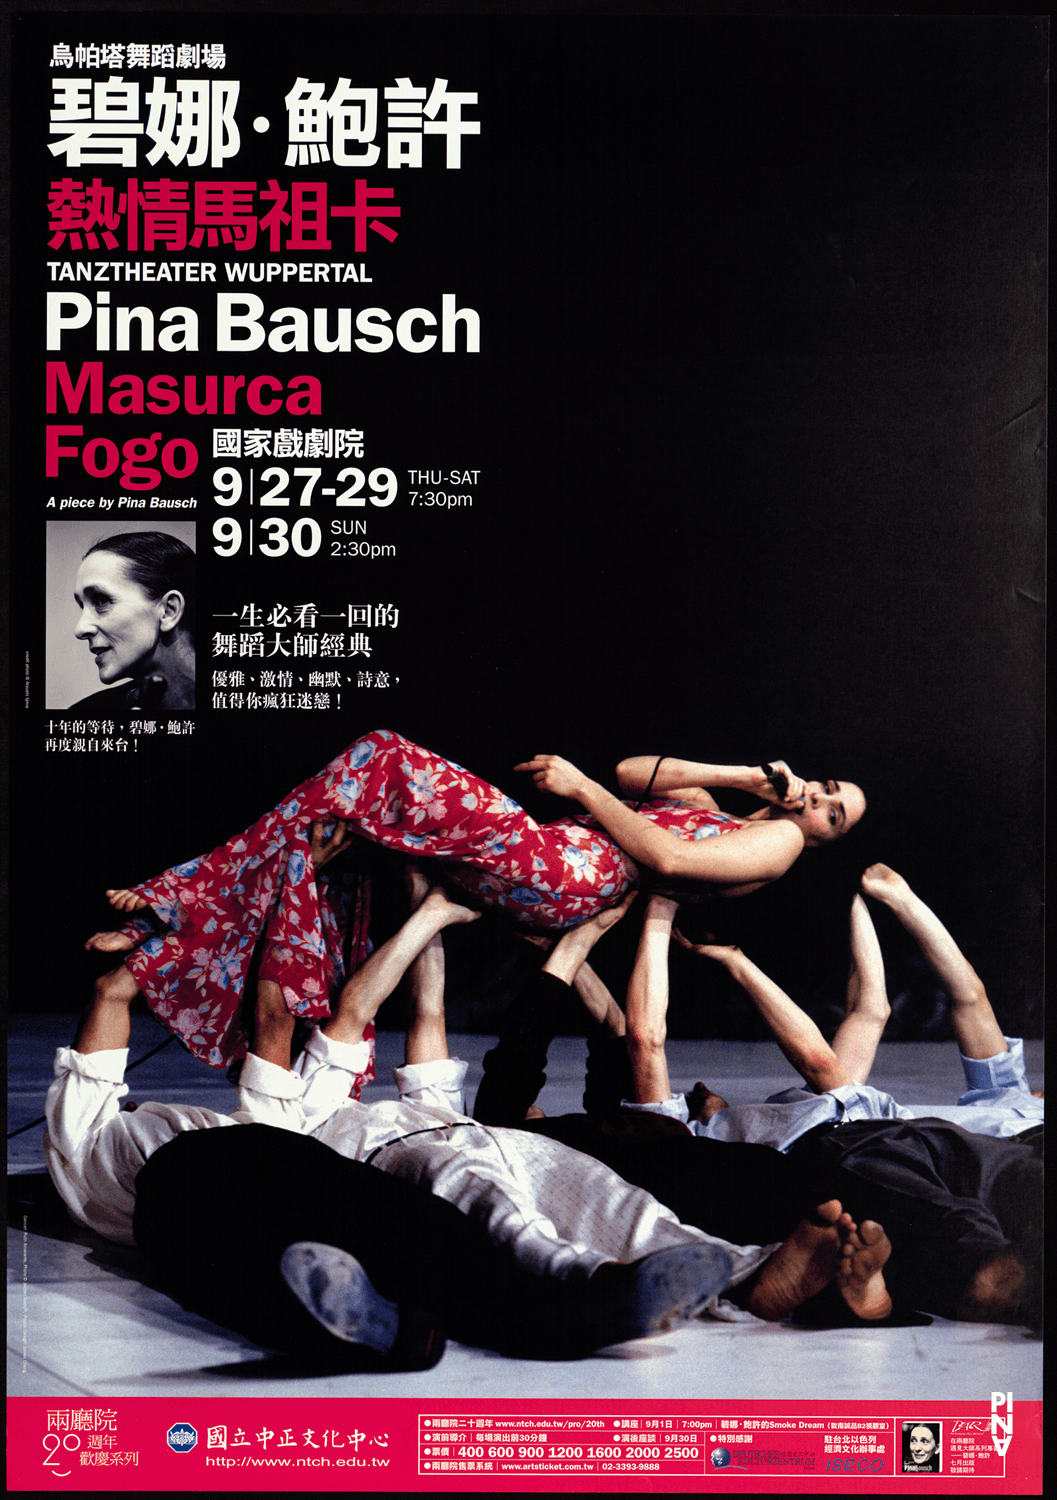 Plakat: Jochen Viehoff © Pina Bausch Foundation, Fotos: Gert Weigelt, Atsushi Iijima